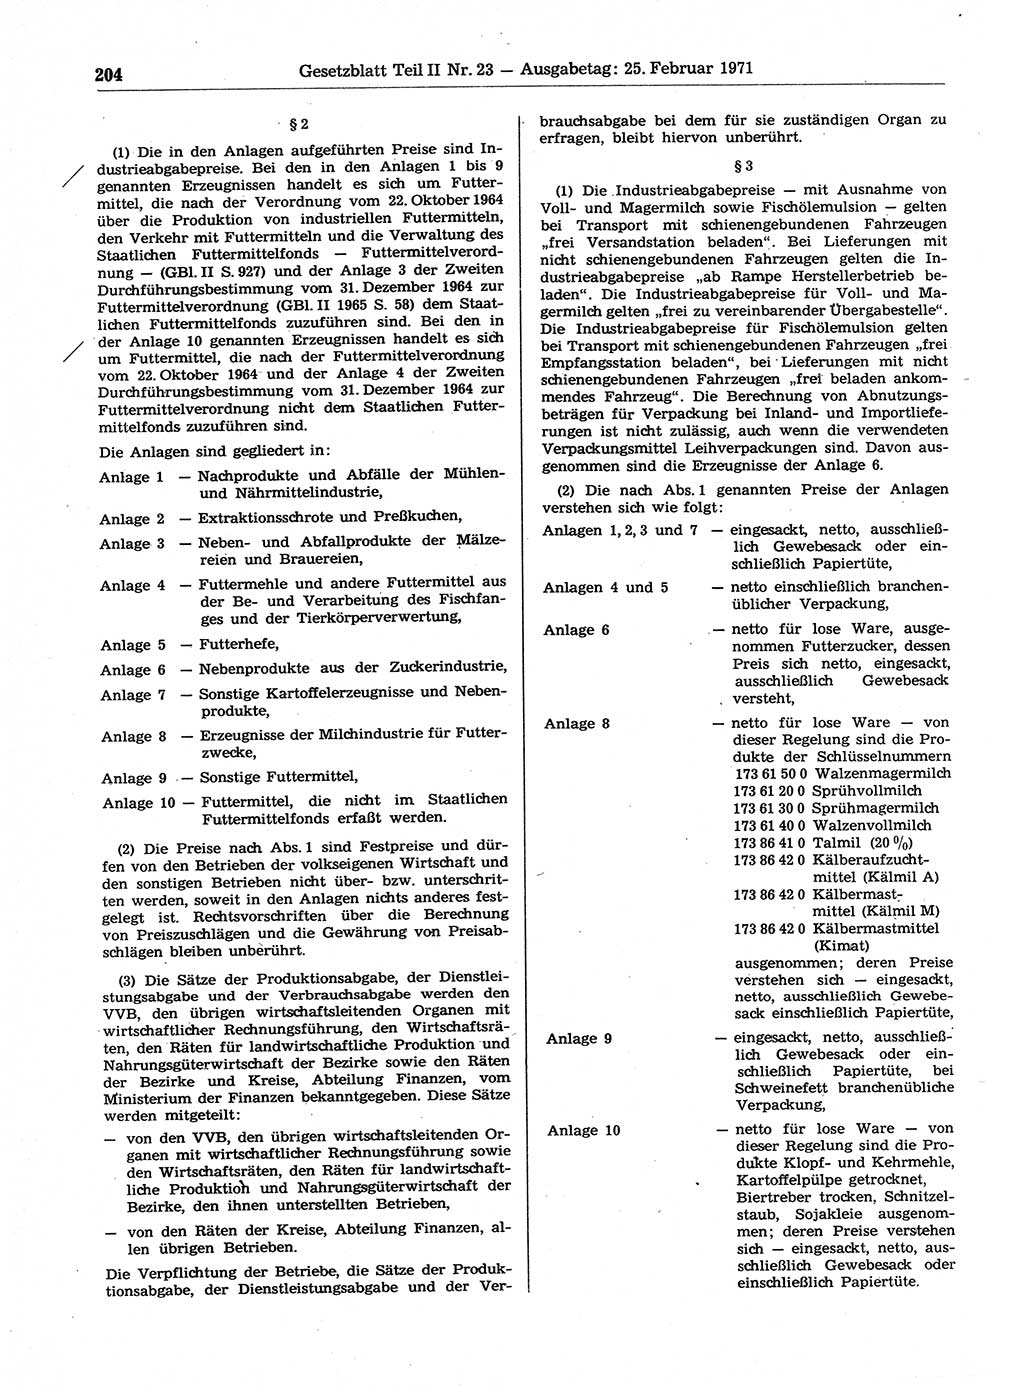 Gesetzblatt (GBl.) der Deutschen Demokratischen Republik (DDR) Teil ⅠⅠ 1971, Seite 204 (GBl. DDR ⅠⅠ 1971, S. 204)